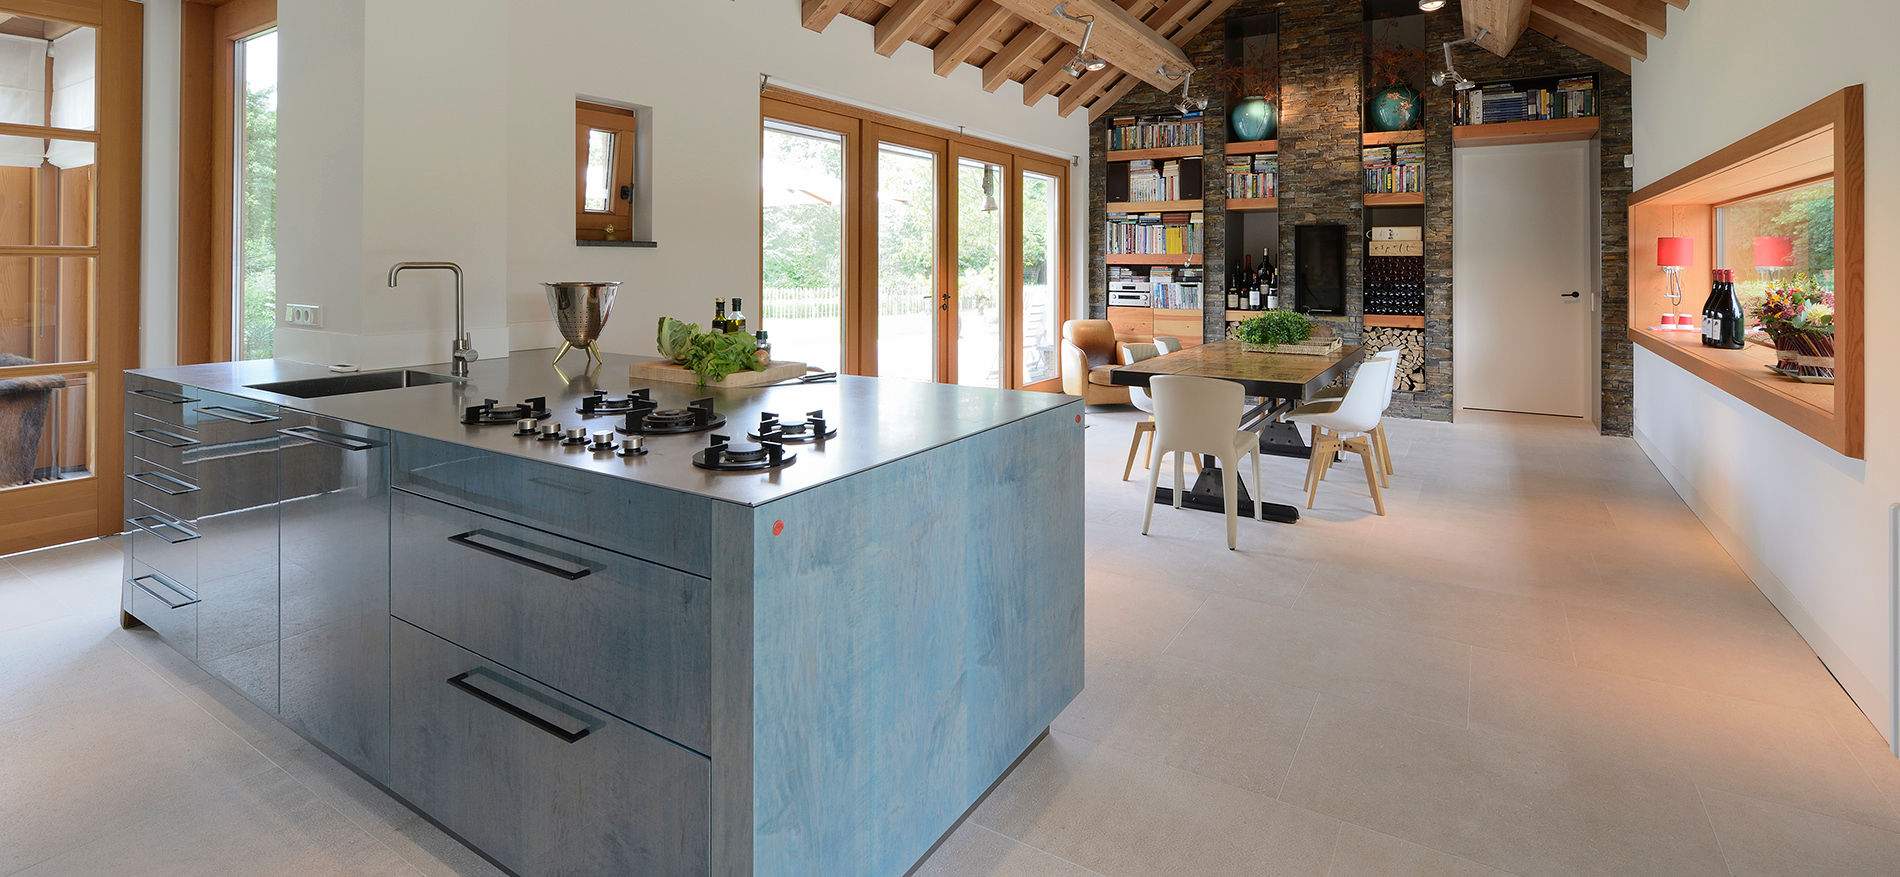 Signature keuken ontwerp met 3 Michelinsterren voor landhuis regio Utrecht, EMYKO | Residential Interior Design EMYKO | Residential Interior Design مطبخ